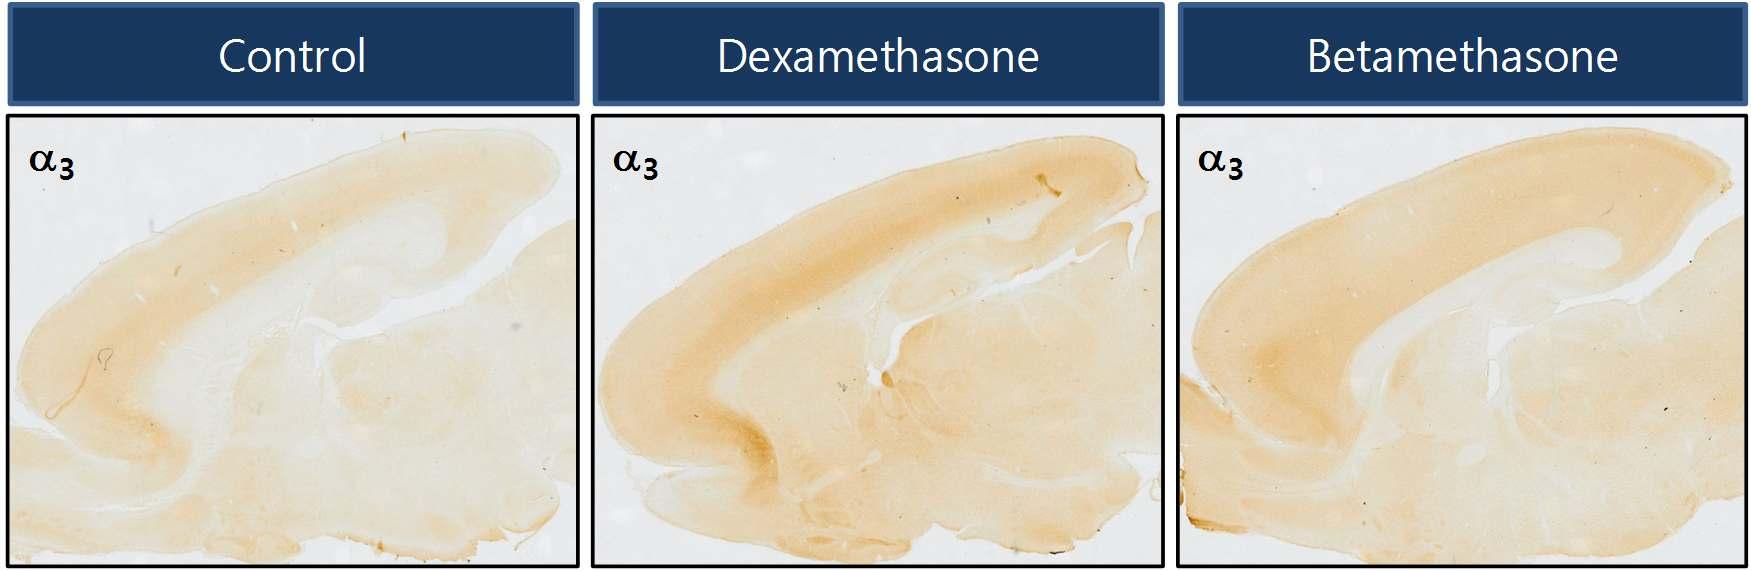 임신 14일 rat에 dexamethasone과 betamethasone을 SQ로 투여한 후, 출생 후 5일째 rat pup의 brain을 적출하여 GABA-A 수용체 α3 subunit에 대해 면역염색을 수행하였음.